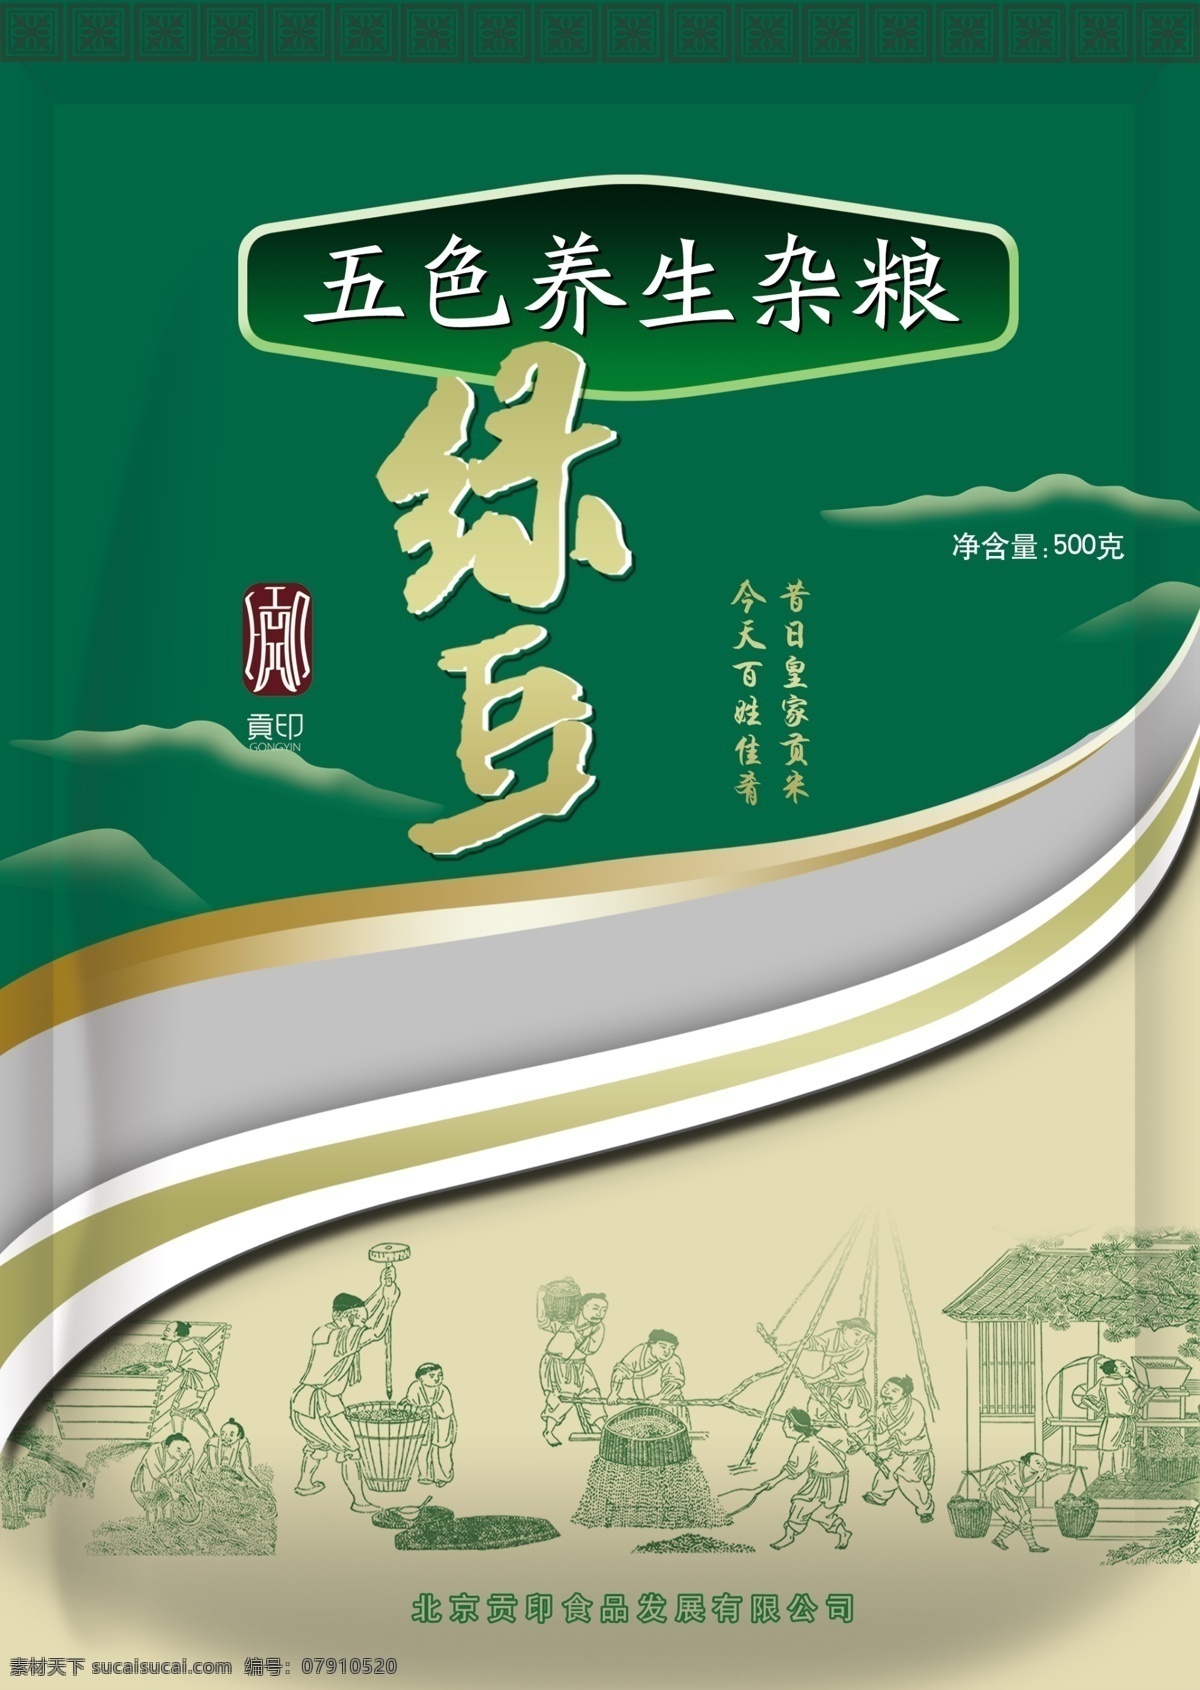 绿豆包装 食品包装 传统纹样 中国风素材 绿豆 包装设计 绿色